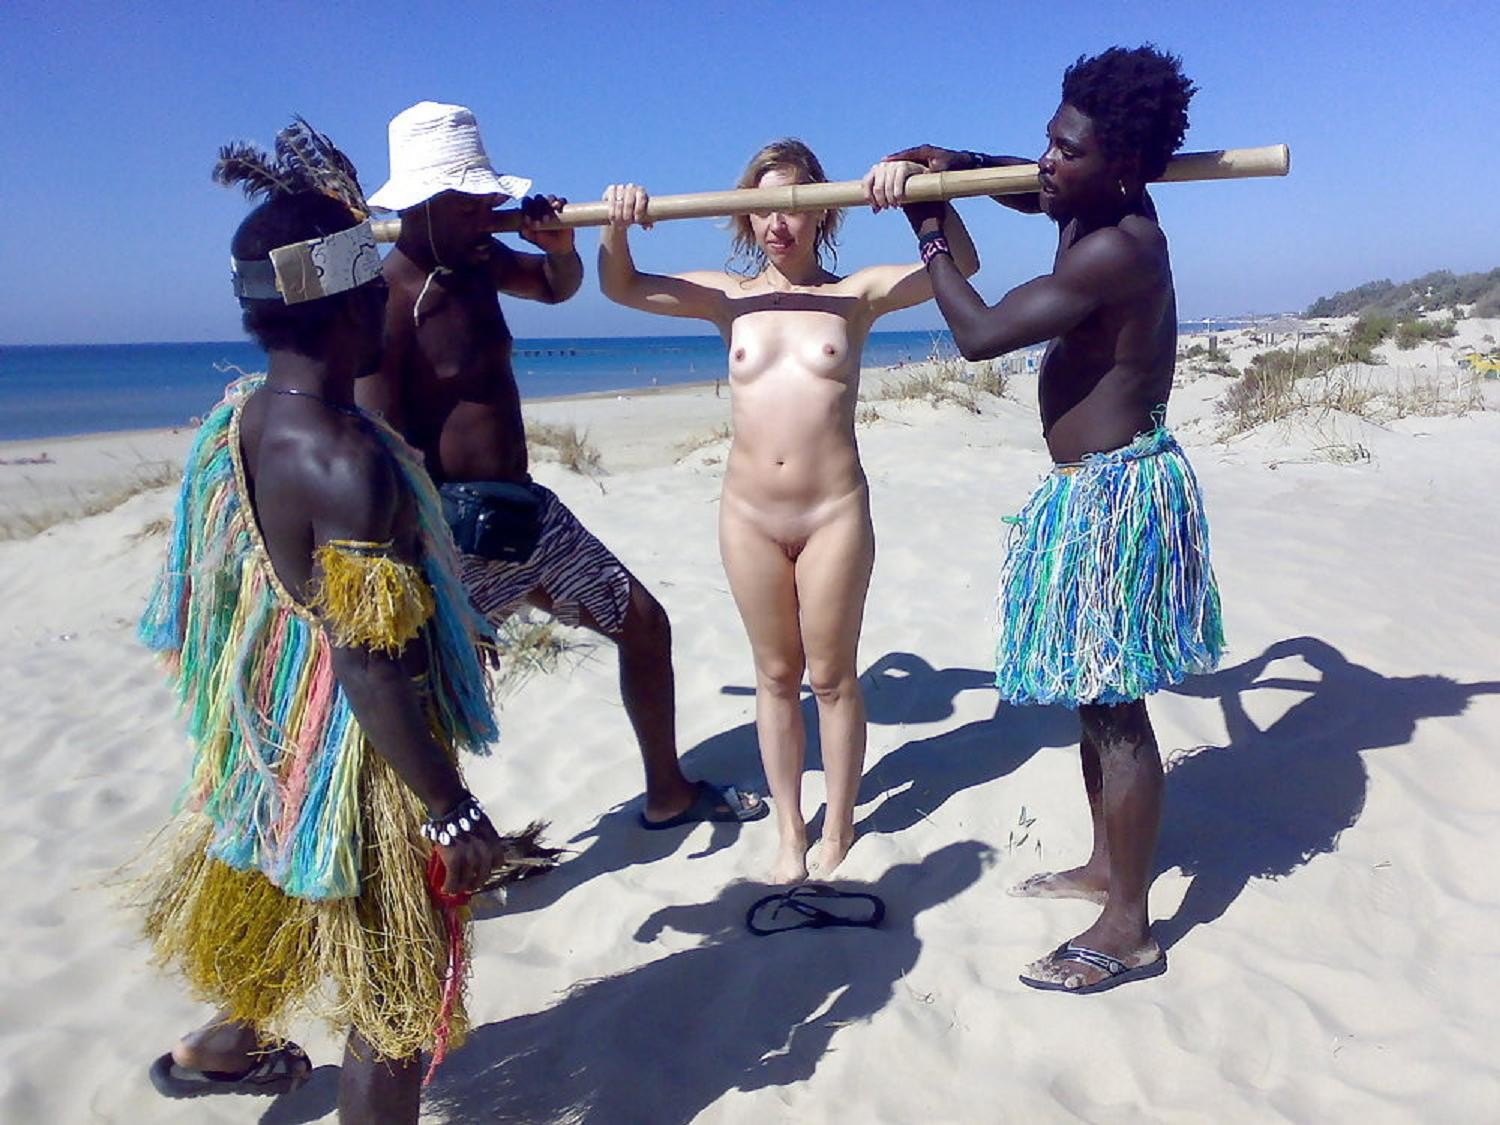 племя с голыми мужиками фото 88